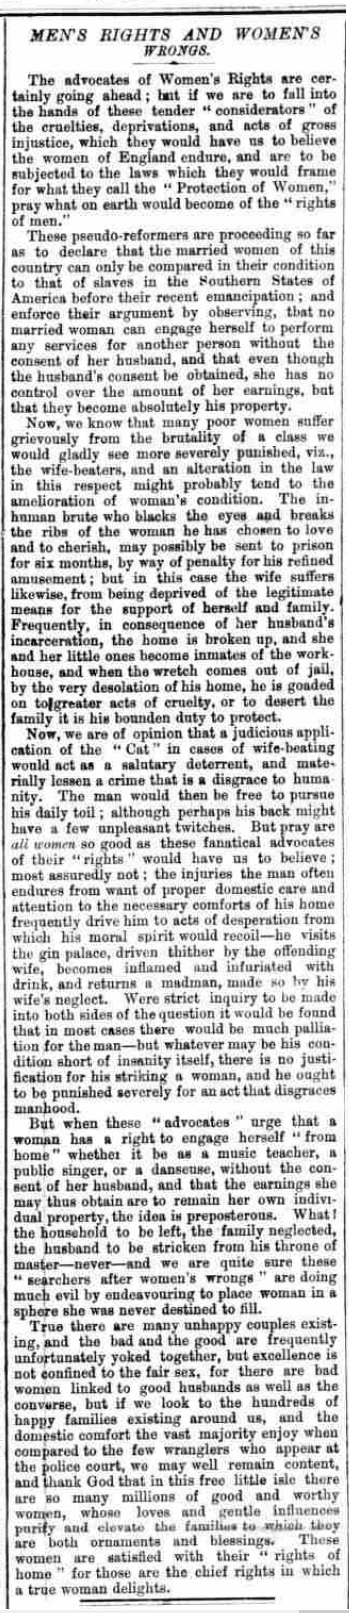 Hackney and Kingsland Gazette - Wednesday 12 July 1871